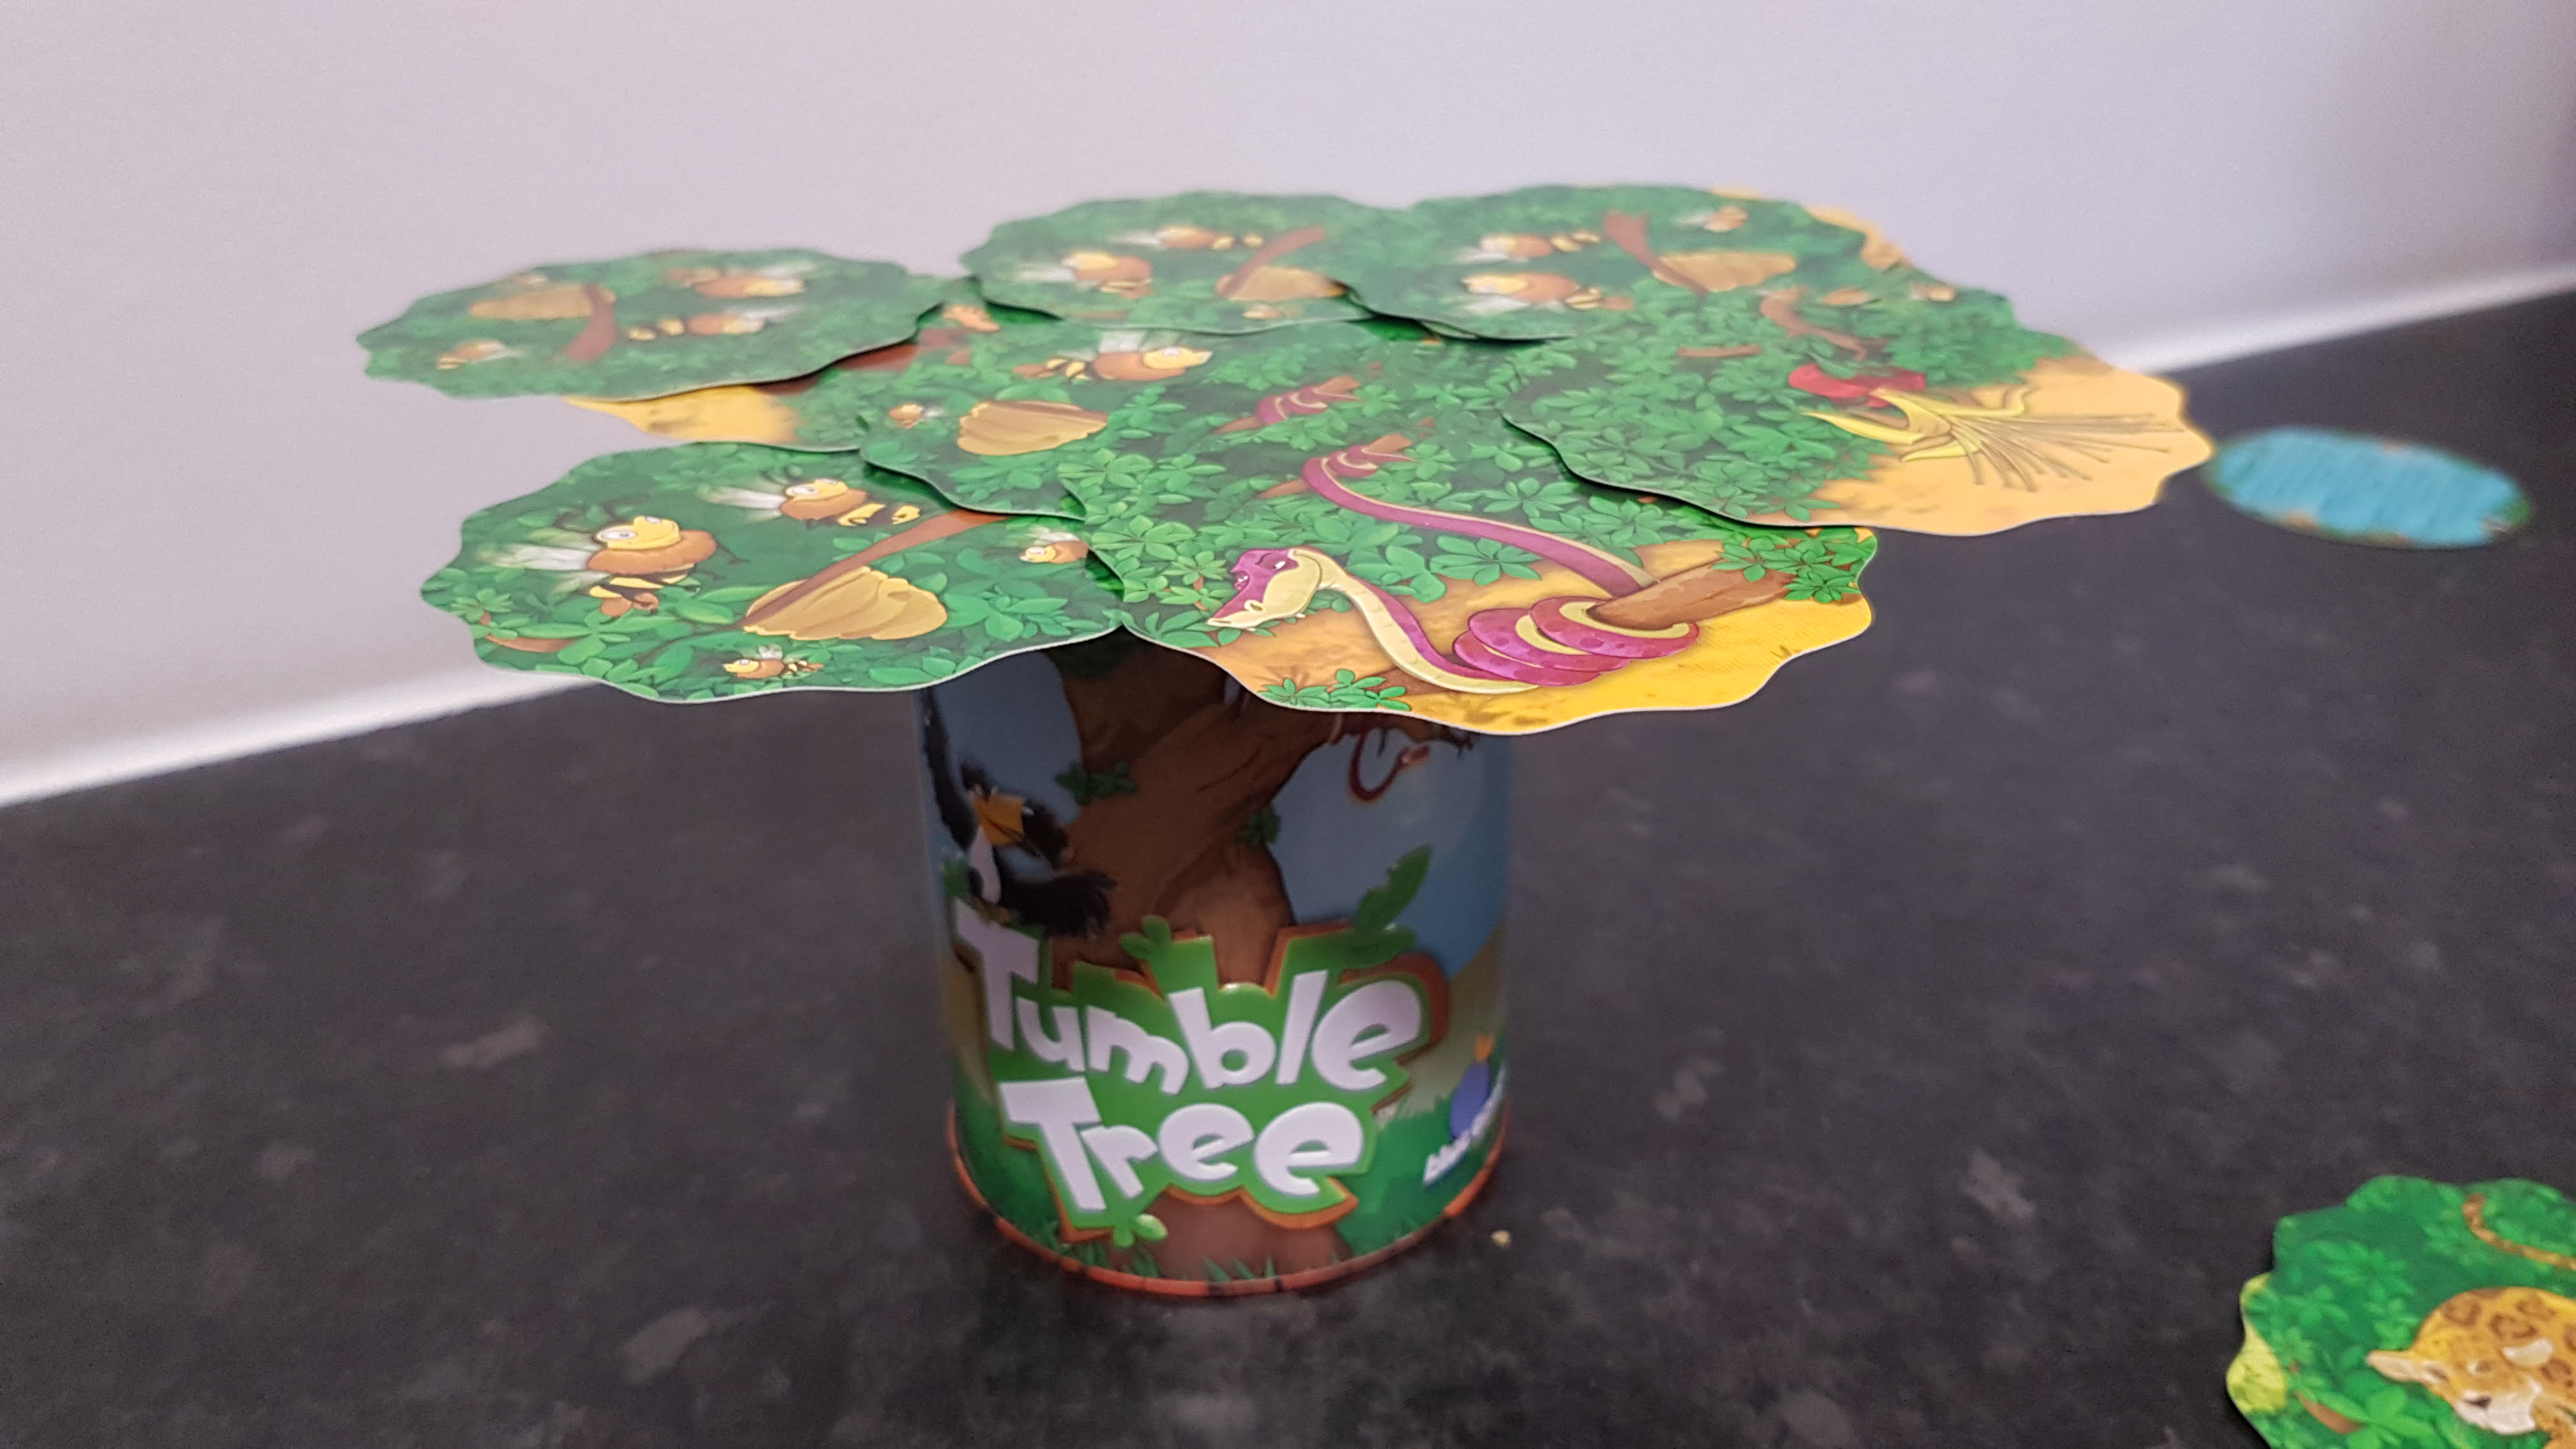 Tumble Tree Review – Brilliant Family Fun